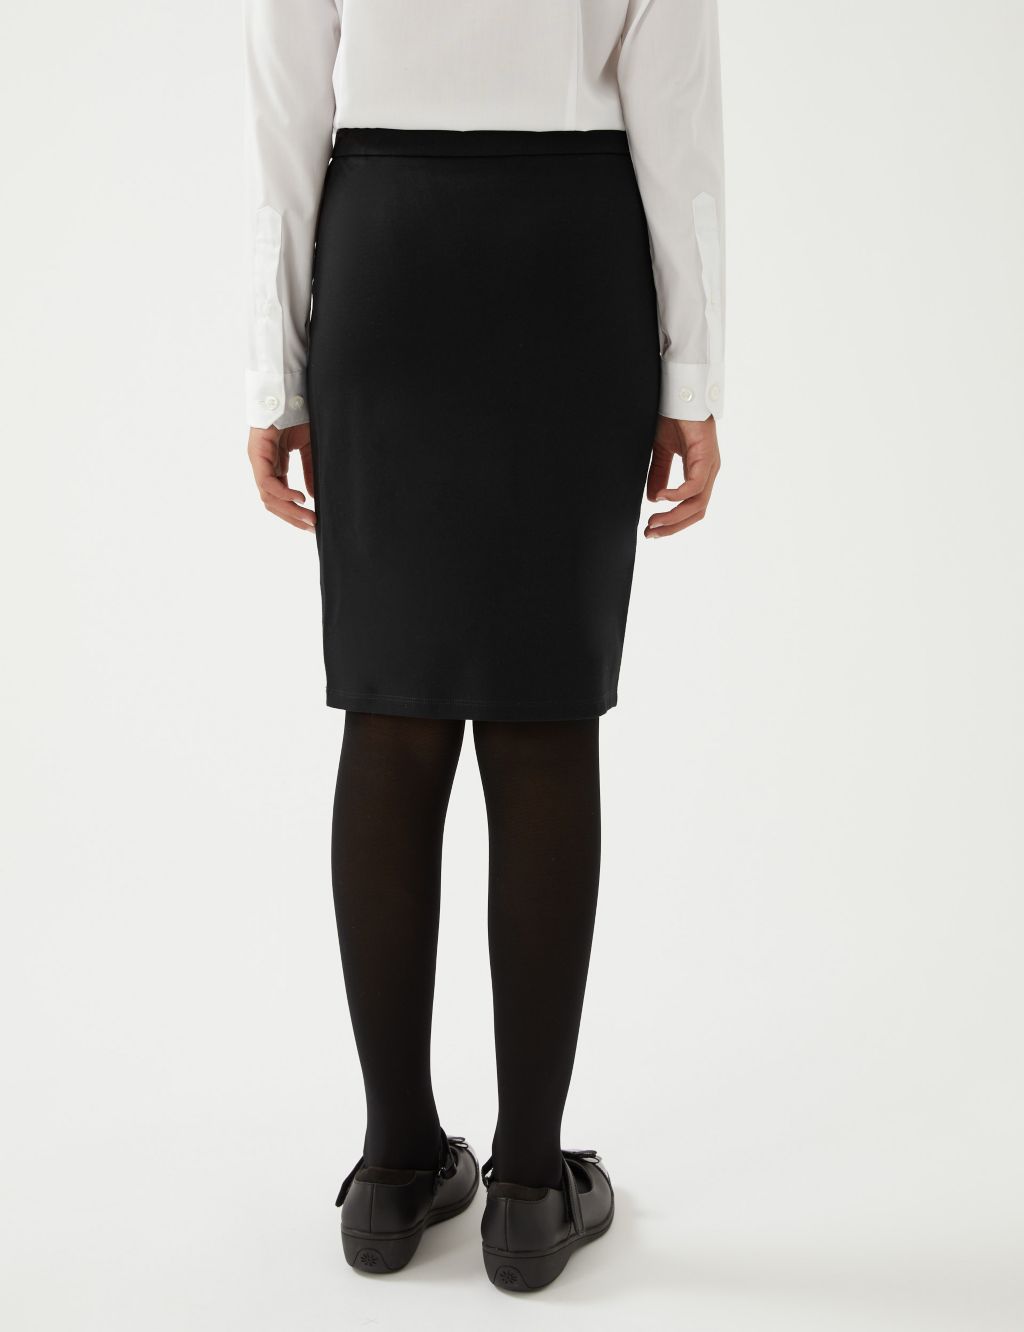 Girls Long Tube School Skirt (9-18 Yrs) image 5